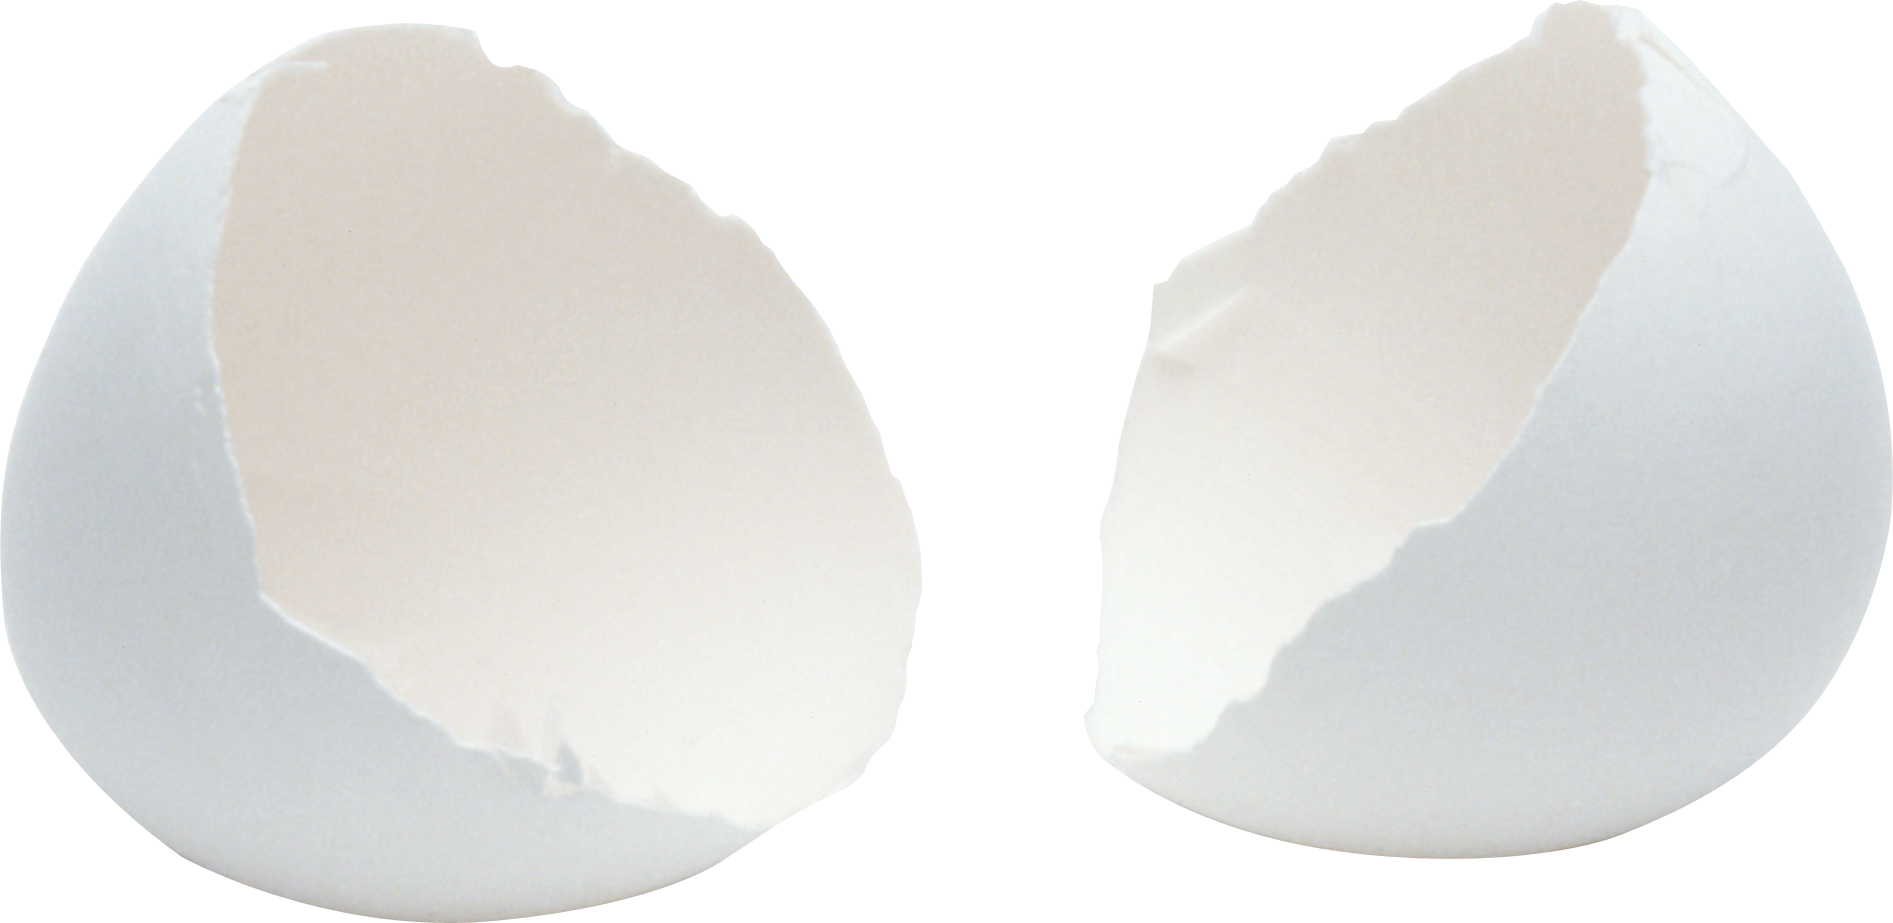 Cracked Egg Png Image - Broken Egg, Transparent background PNG HD thumbnail